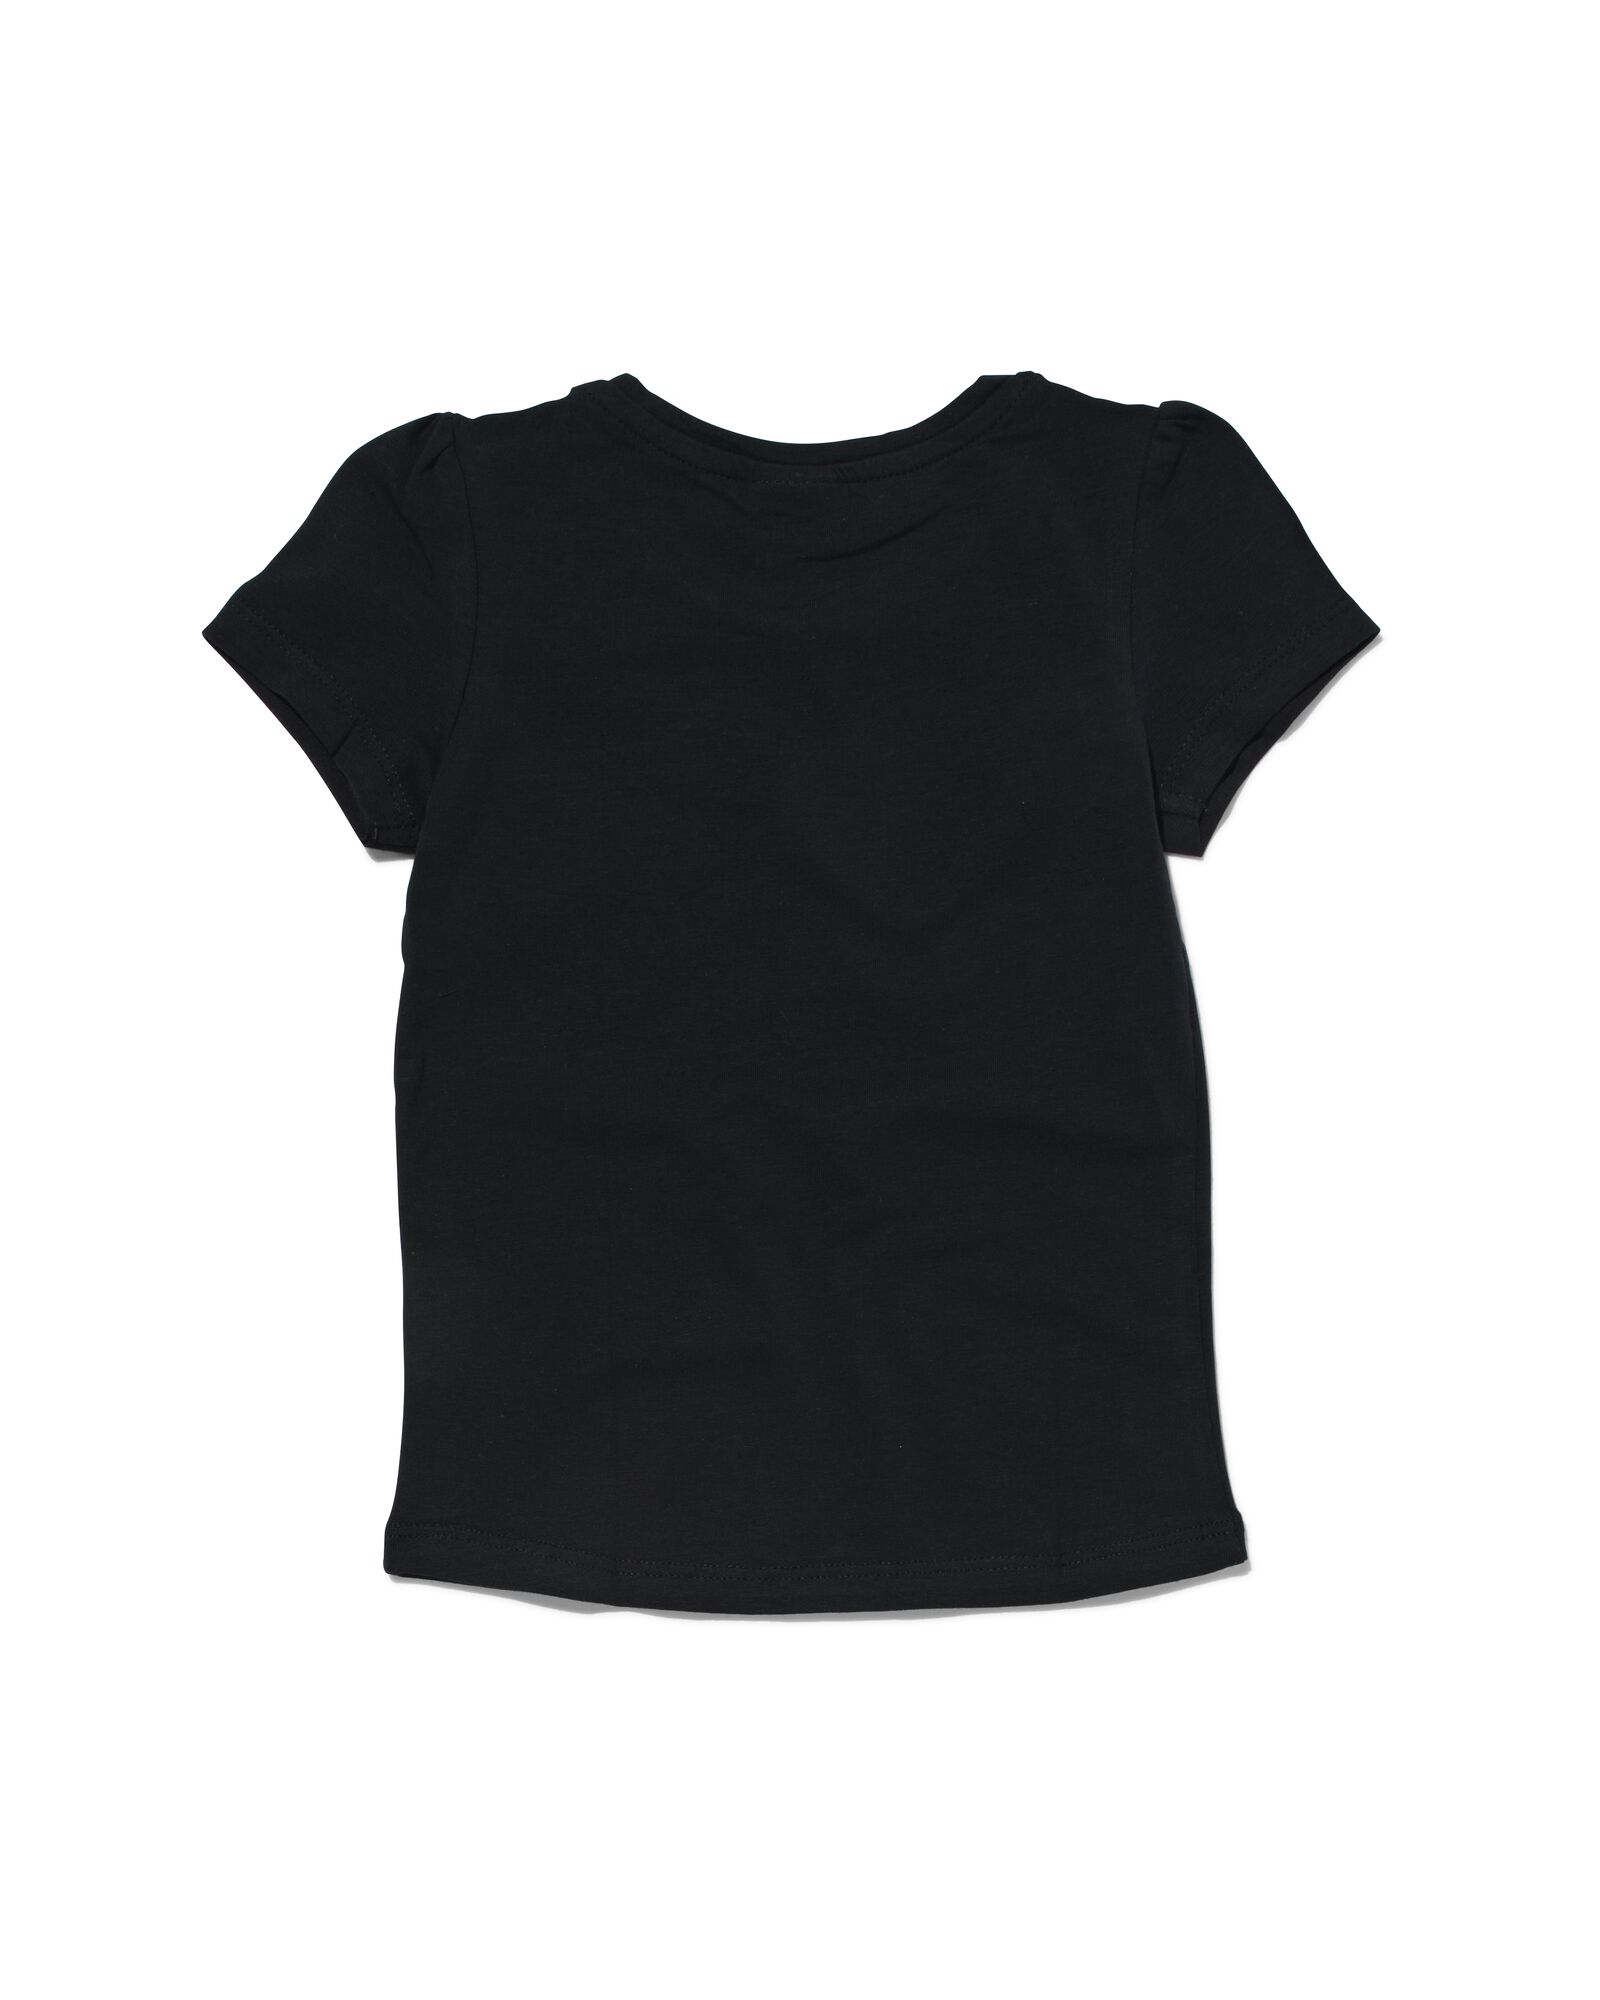 kinder t-shirt zwart 98/104 - 30843951 - HEMA